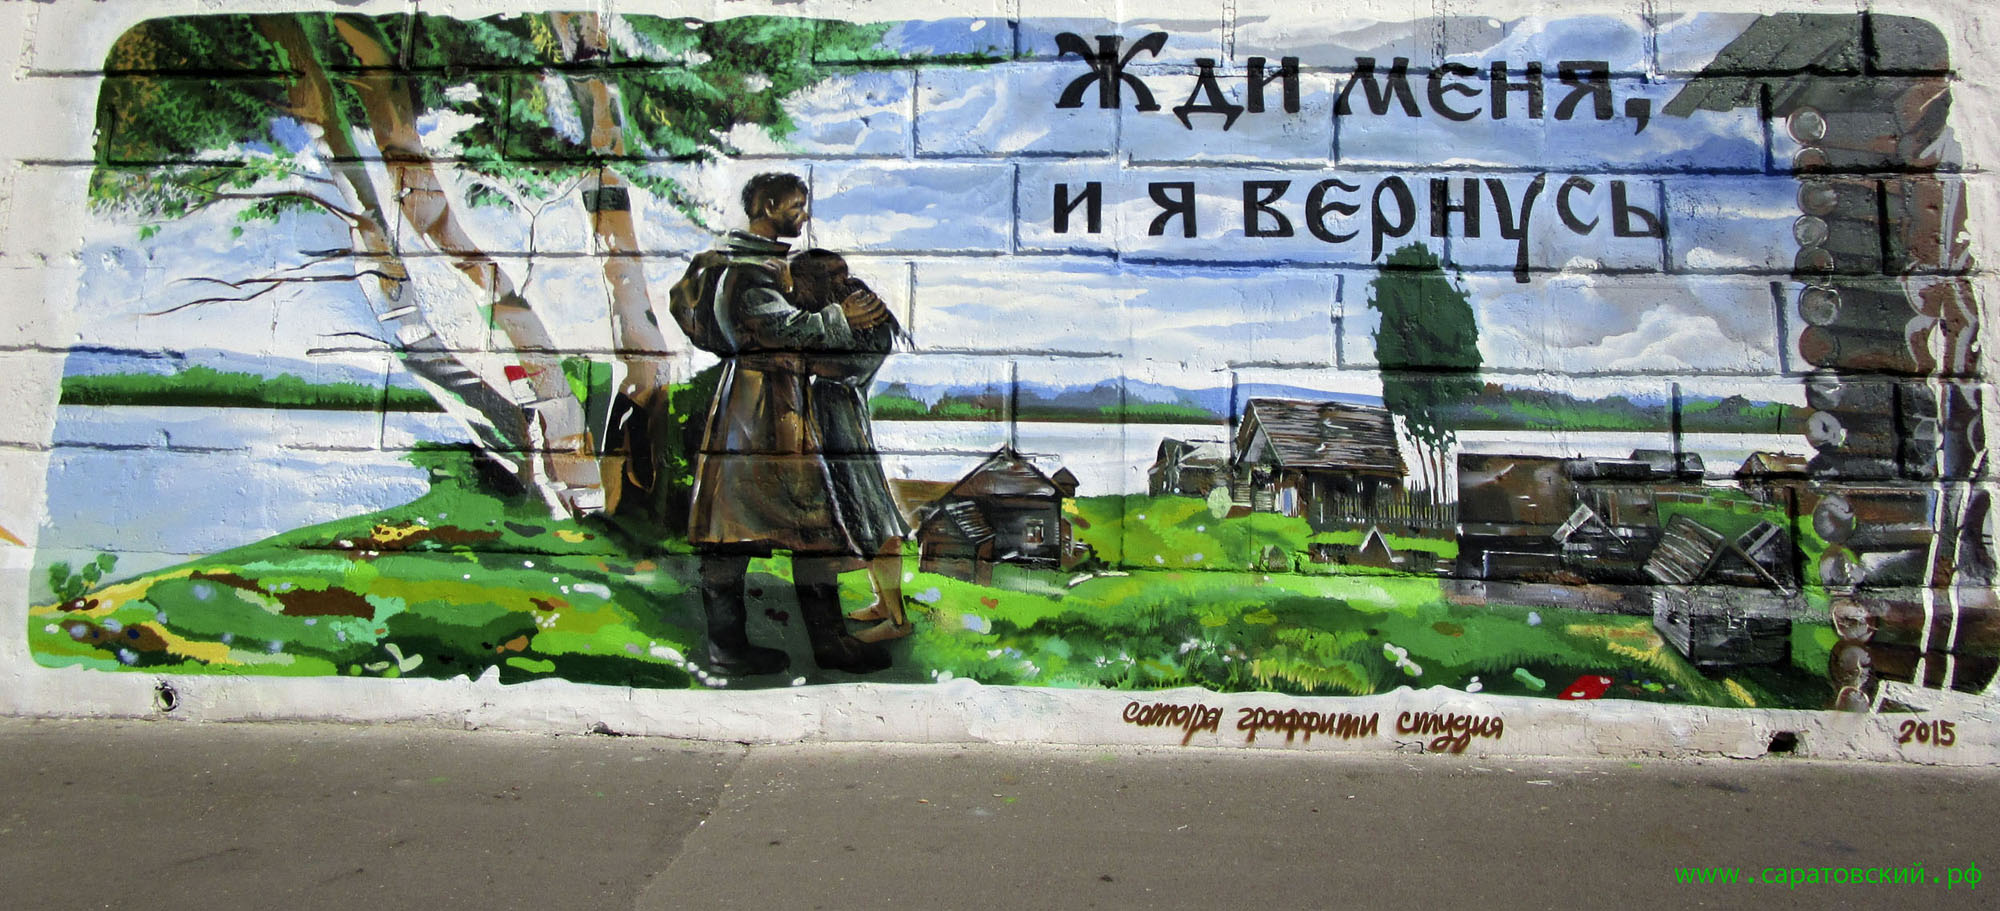 Набережная Космонавтов, граффити: Константин Симонов и Саратов для победы в Великой Отечественной войне